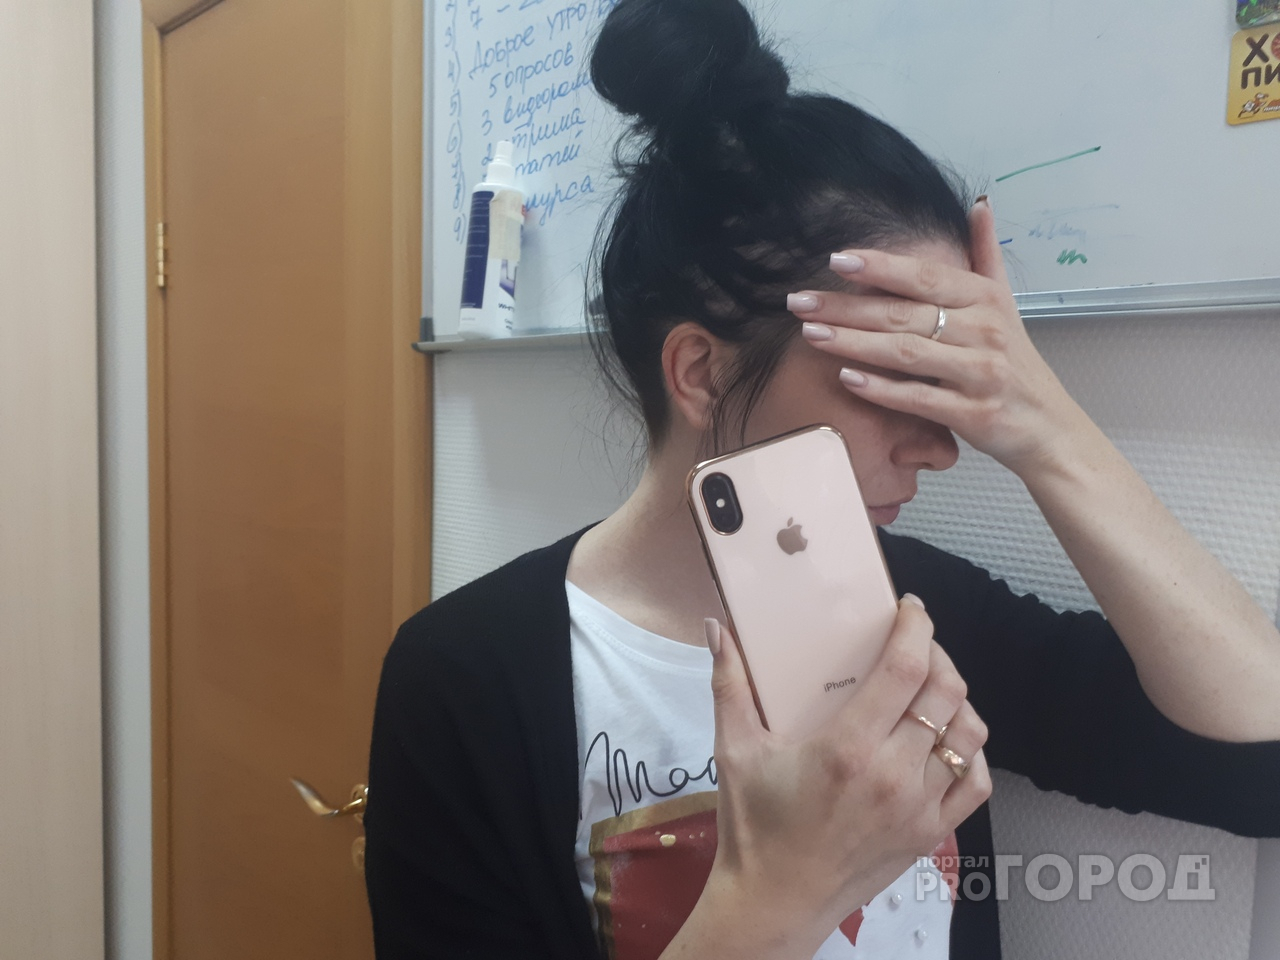 "Засветила" айфон и пожалела: любительницу быстрой езды наказали в Ярославле